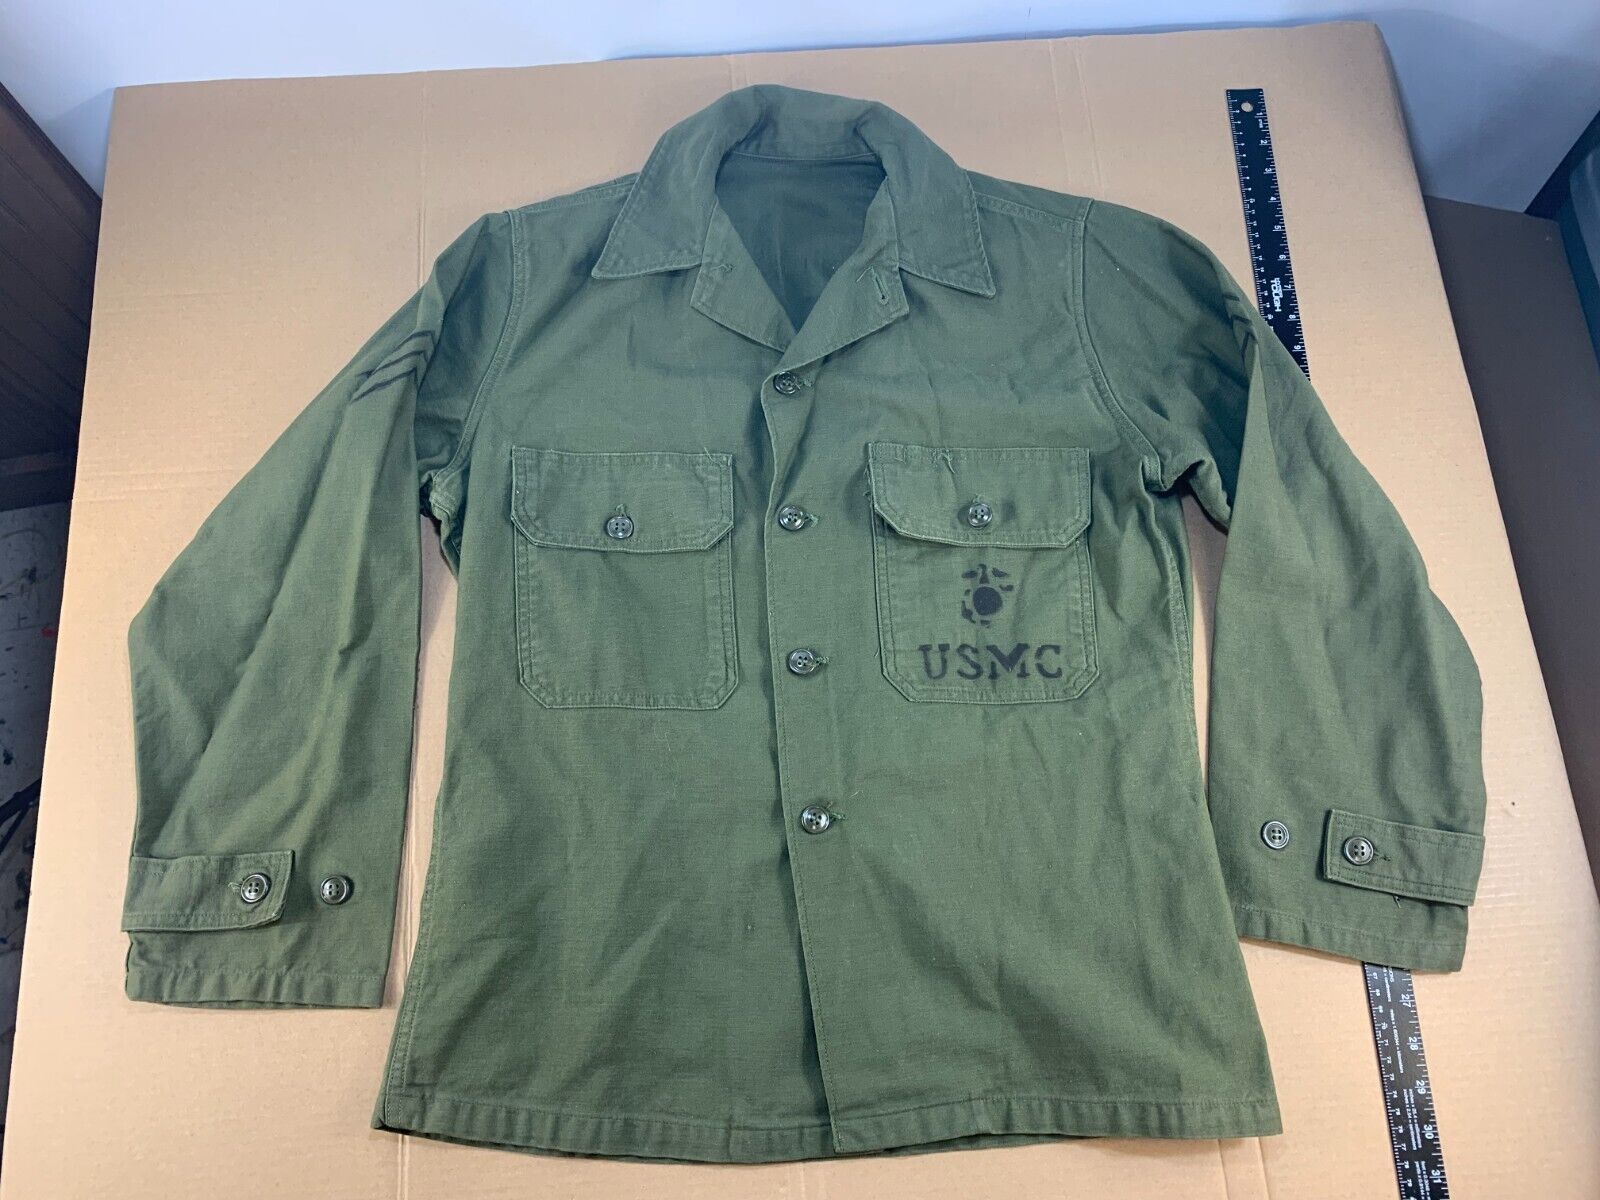 Vintage Minty Vietnam War 60s 70s USMC Field Uniform Shirt Jacket Marine